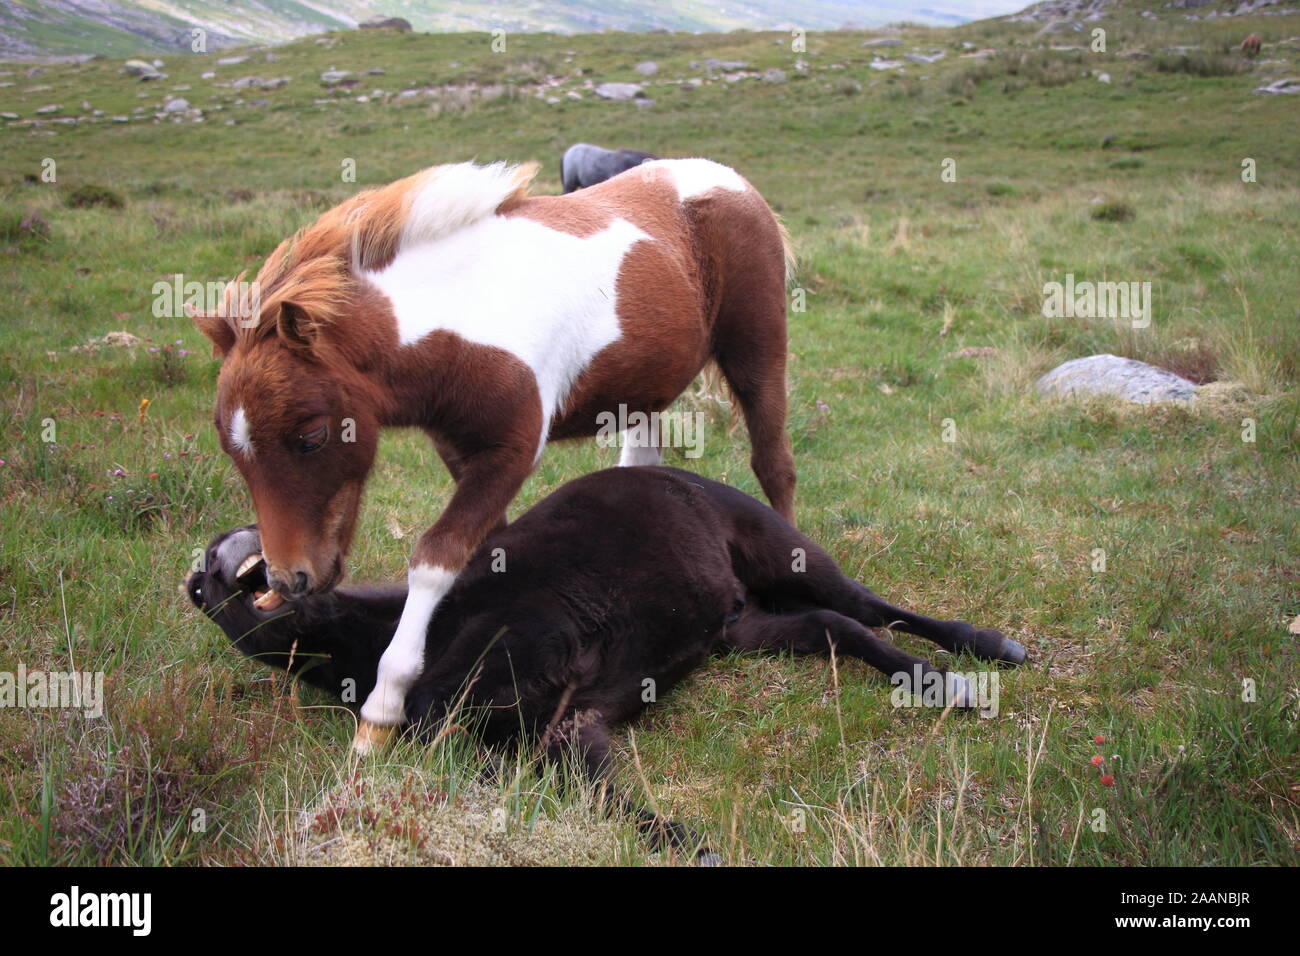 La lutte contre deux poneys Shetland sauvage dans le parc national de Snowdonia, le Nord du Pays de Galles, Royaume-Uni Banque D'Images